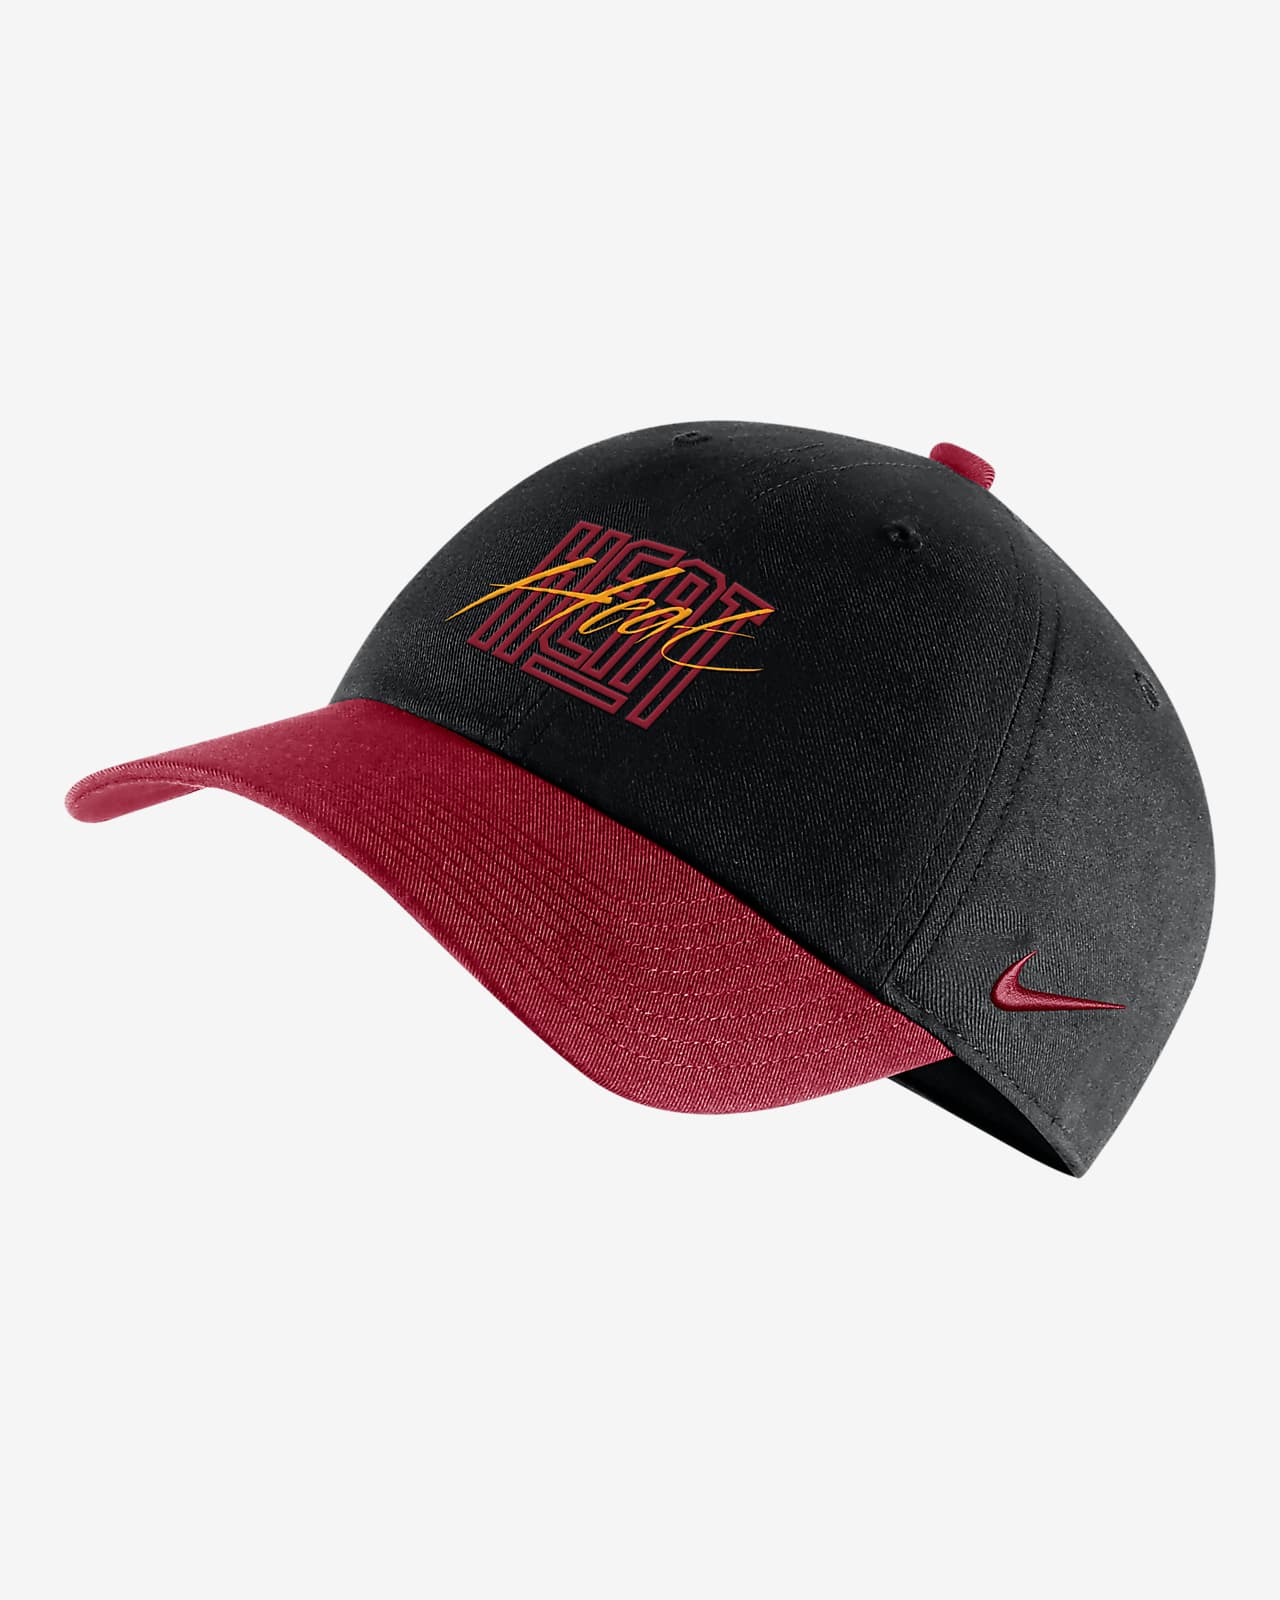 Miami Heat Heritage86 Nike NBA Adjustable Hat